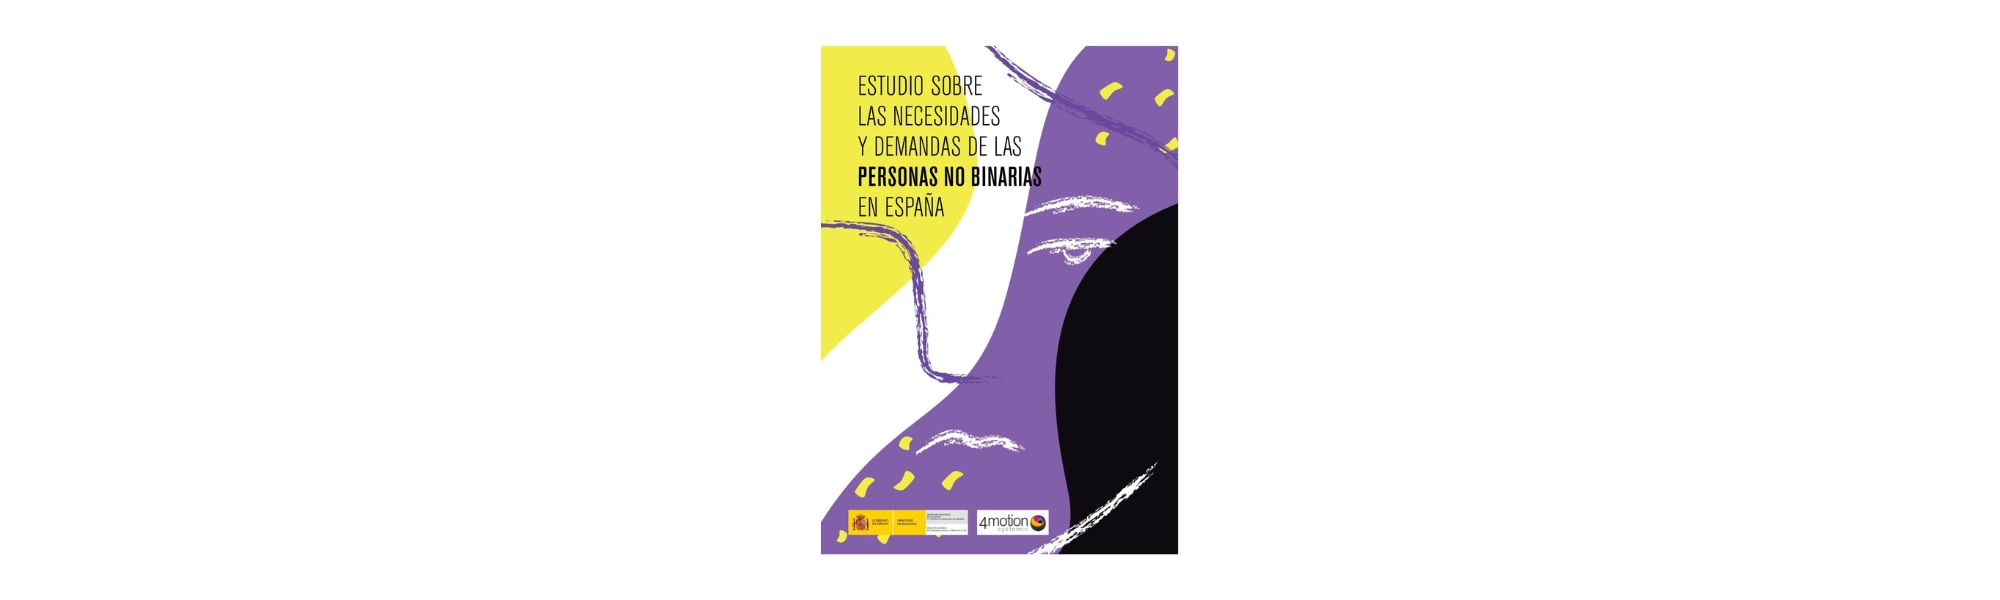 Igualdad presenta el «Estudio sobre las necesidades y demandas de las personas no binarias en España»